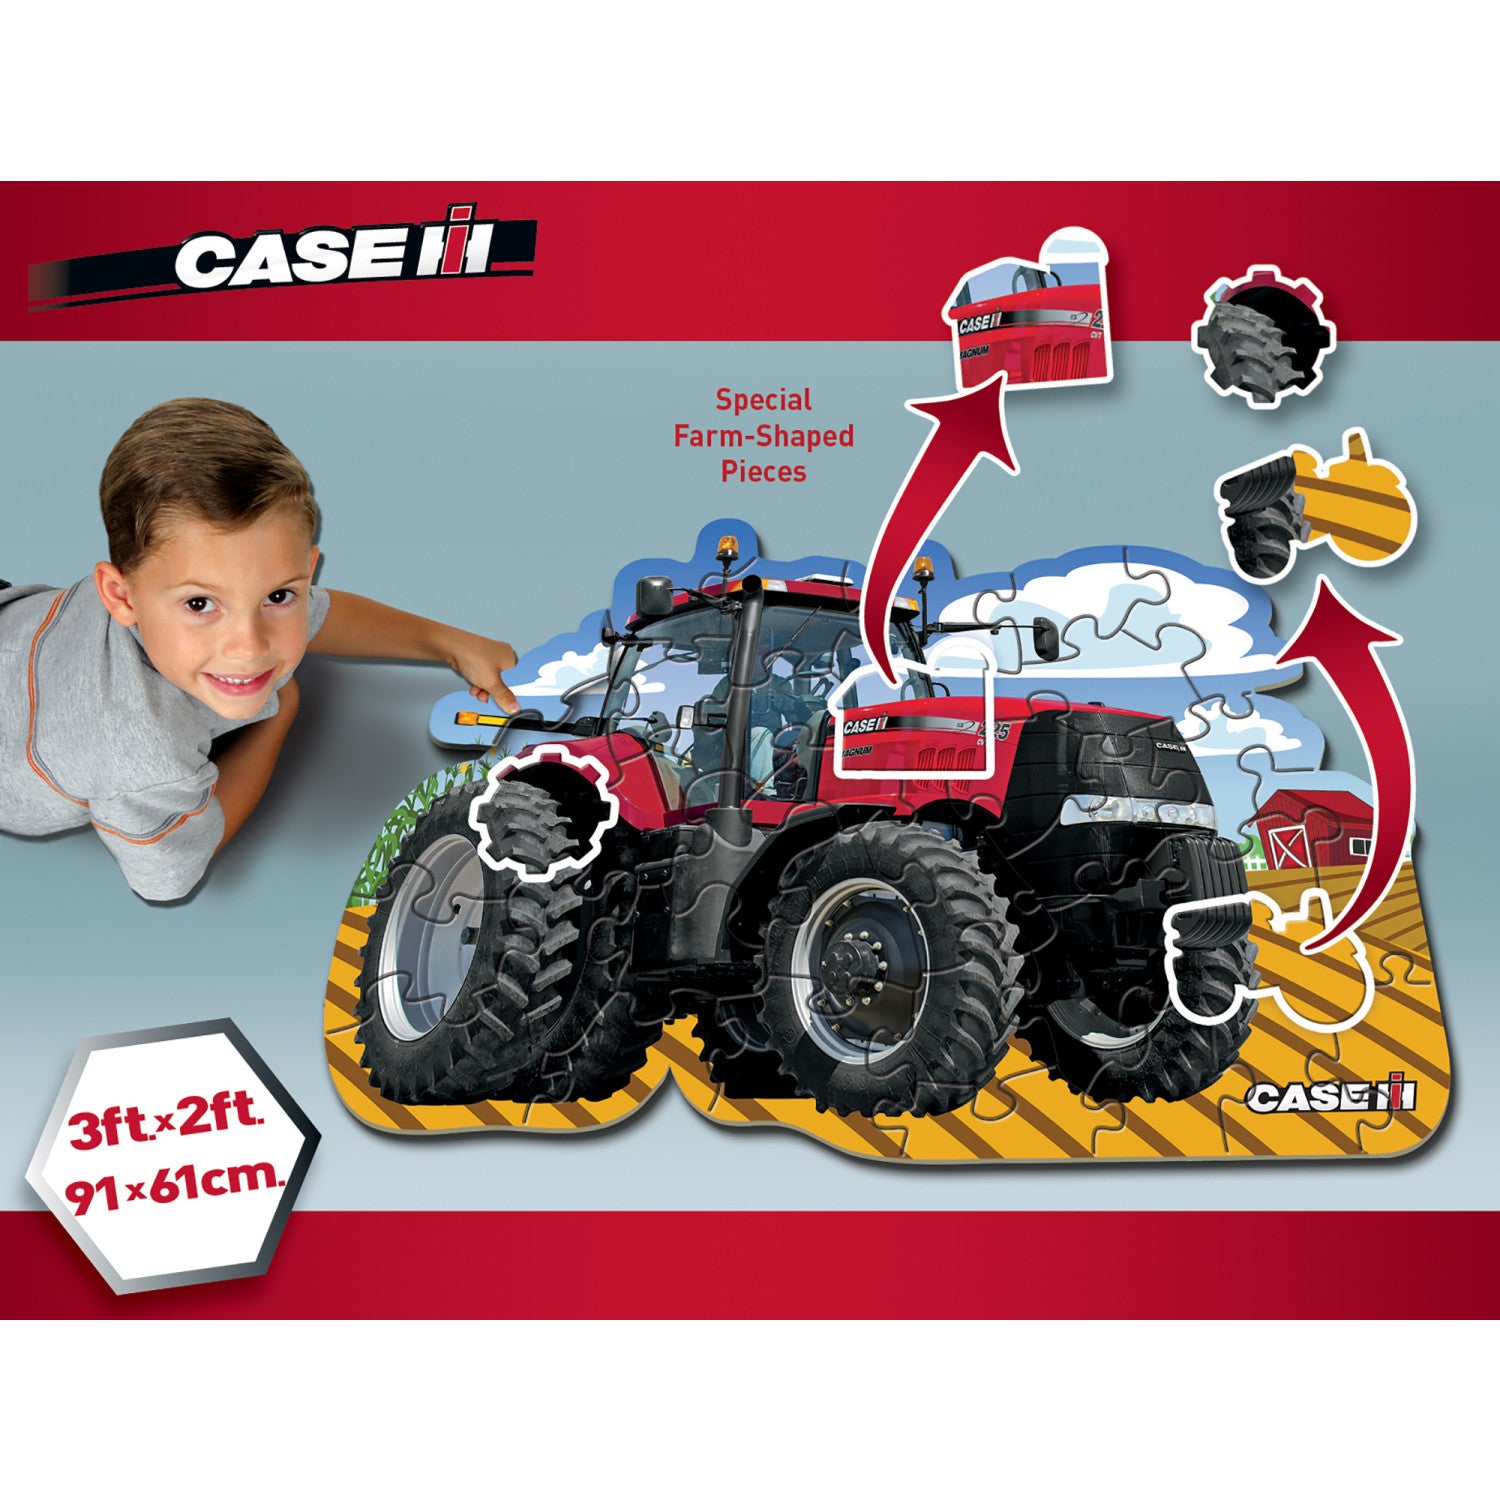 Case IH - Tractor 36 Piece Floor Puzzle